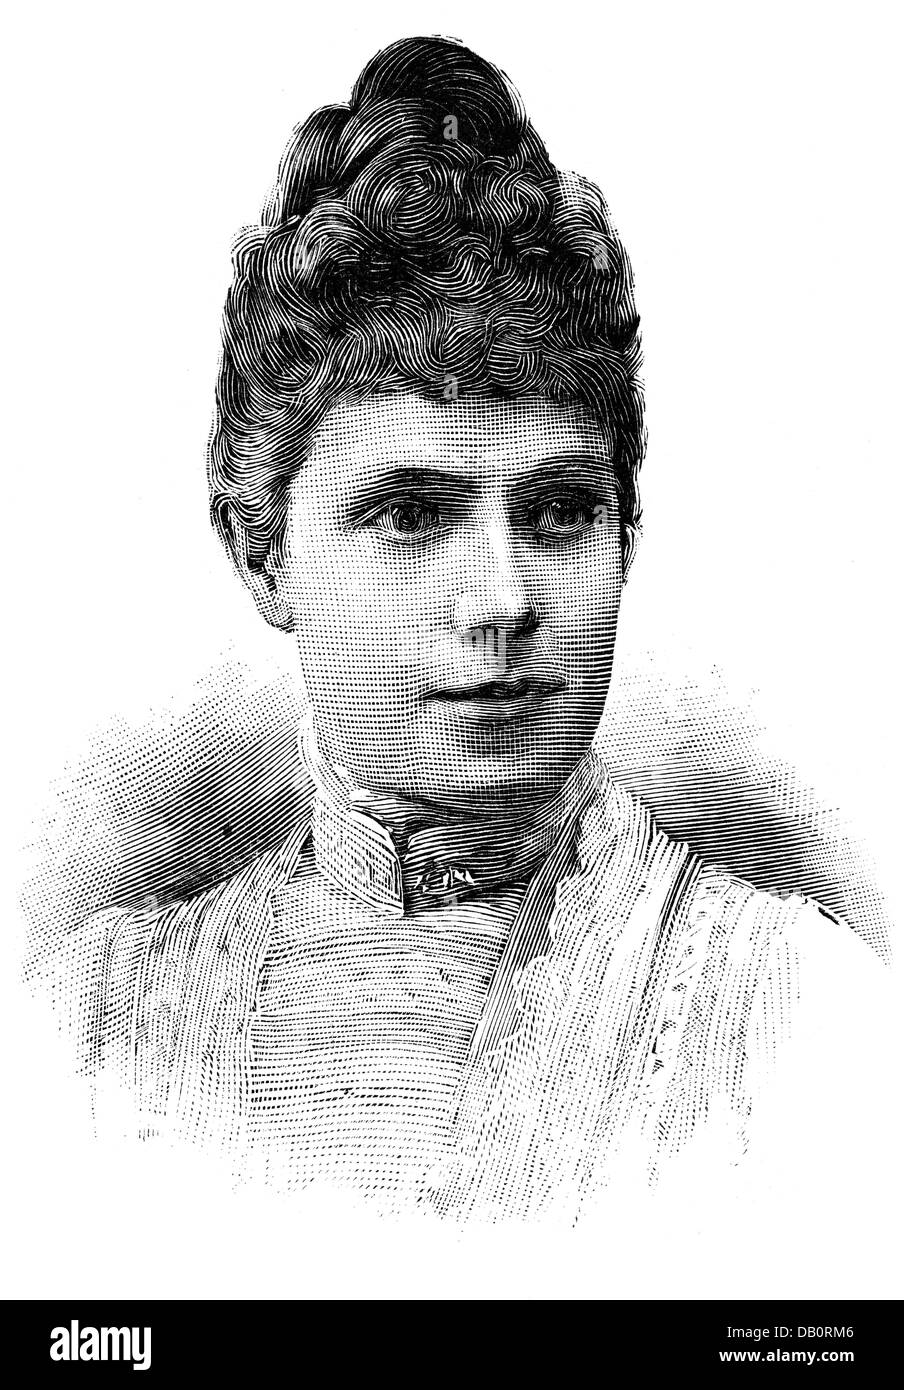 Maria Eulalia, 12.2.1864 - 8.3.1958, Duchessa di Montpensier 1886 - 1930, ritratto, incisione in legno, circa 1885, Foto Stock